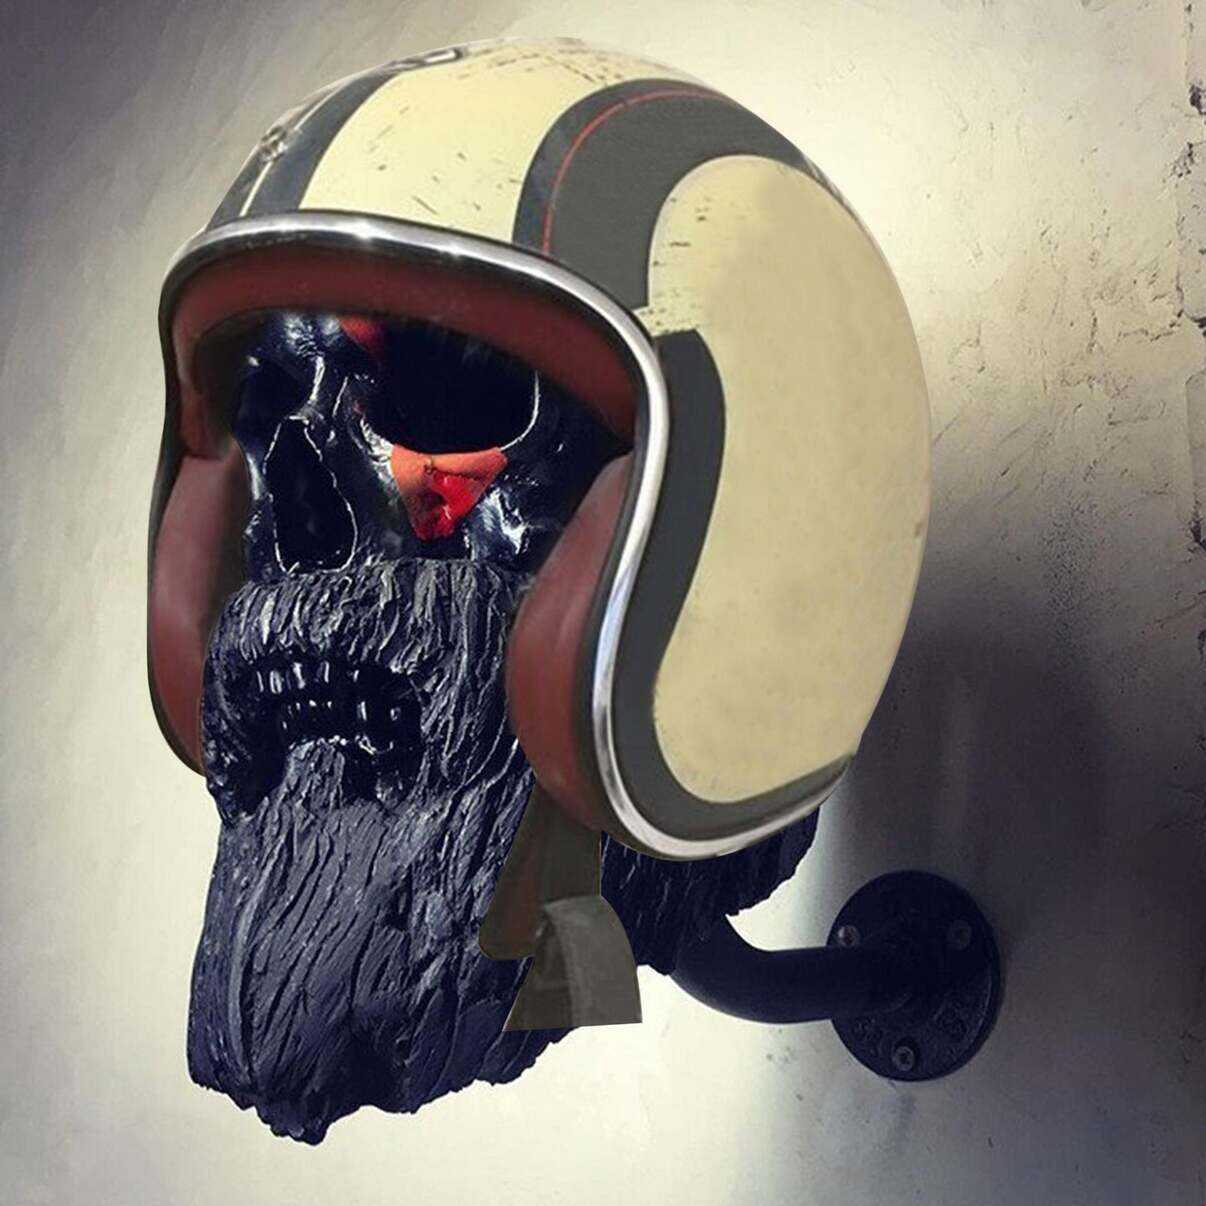 Black Bearded Hat or Helmet Rack - Tattoo Vagabond